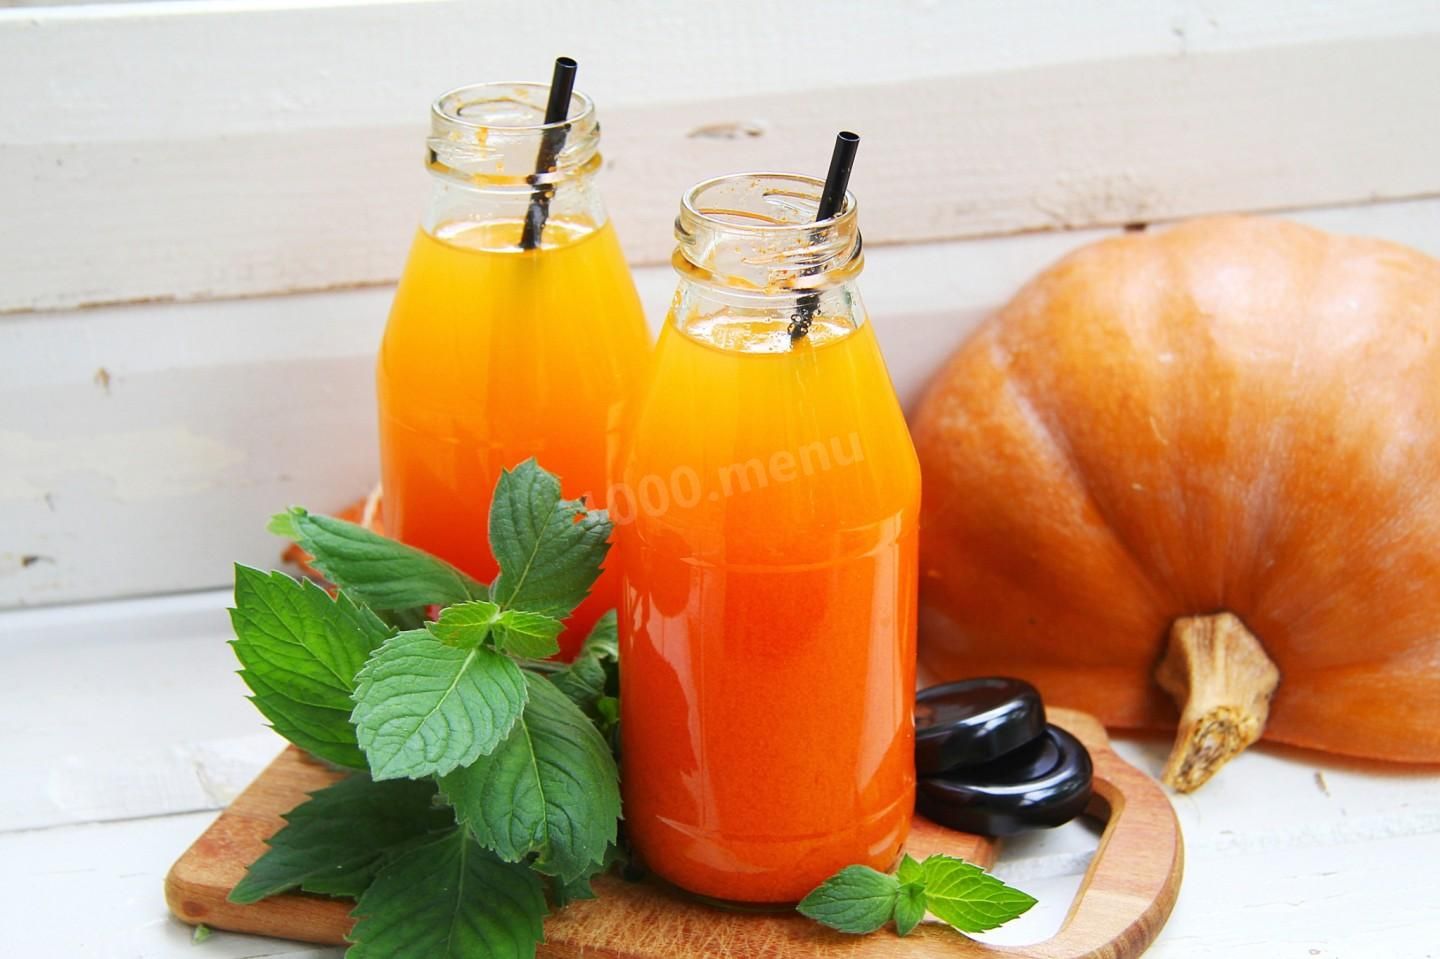 Свежевыжатый сок из тыквы: как приготовить и как пить тыквенный фреш, варианты рецептов с овощами и фруктами, применение в качестве лечения